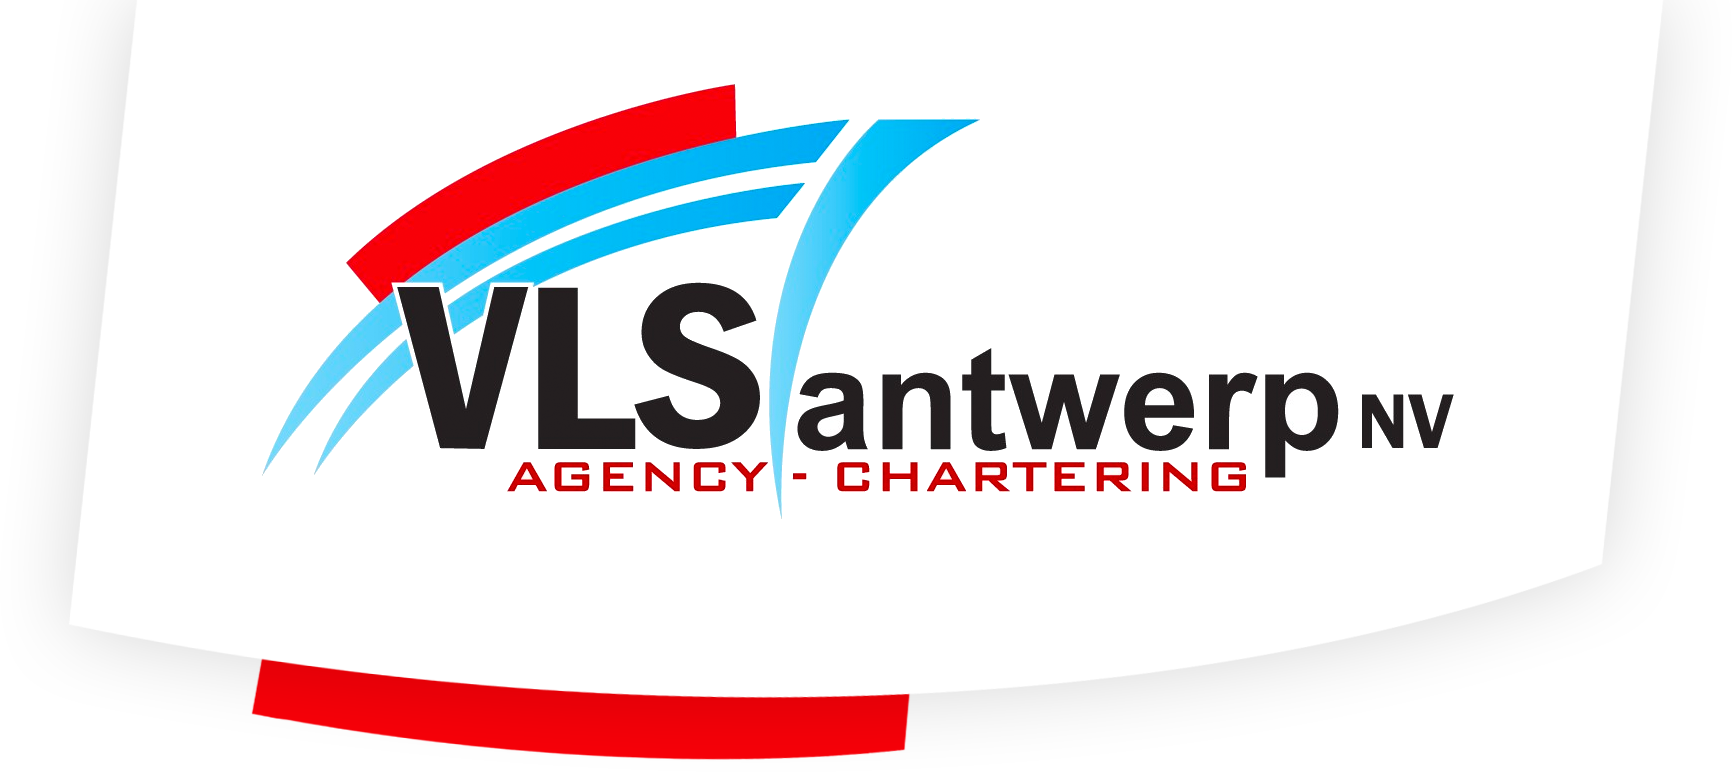 VLS Antwerp NV